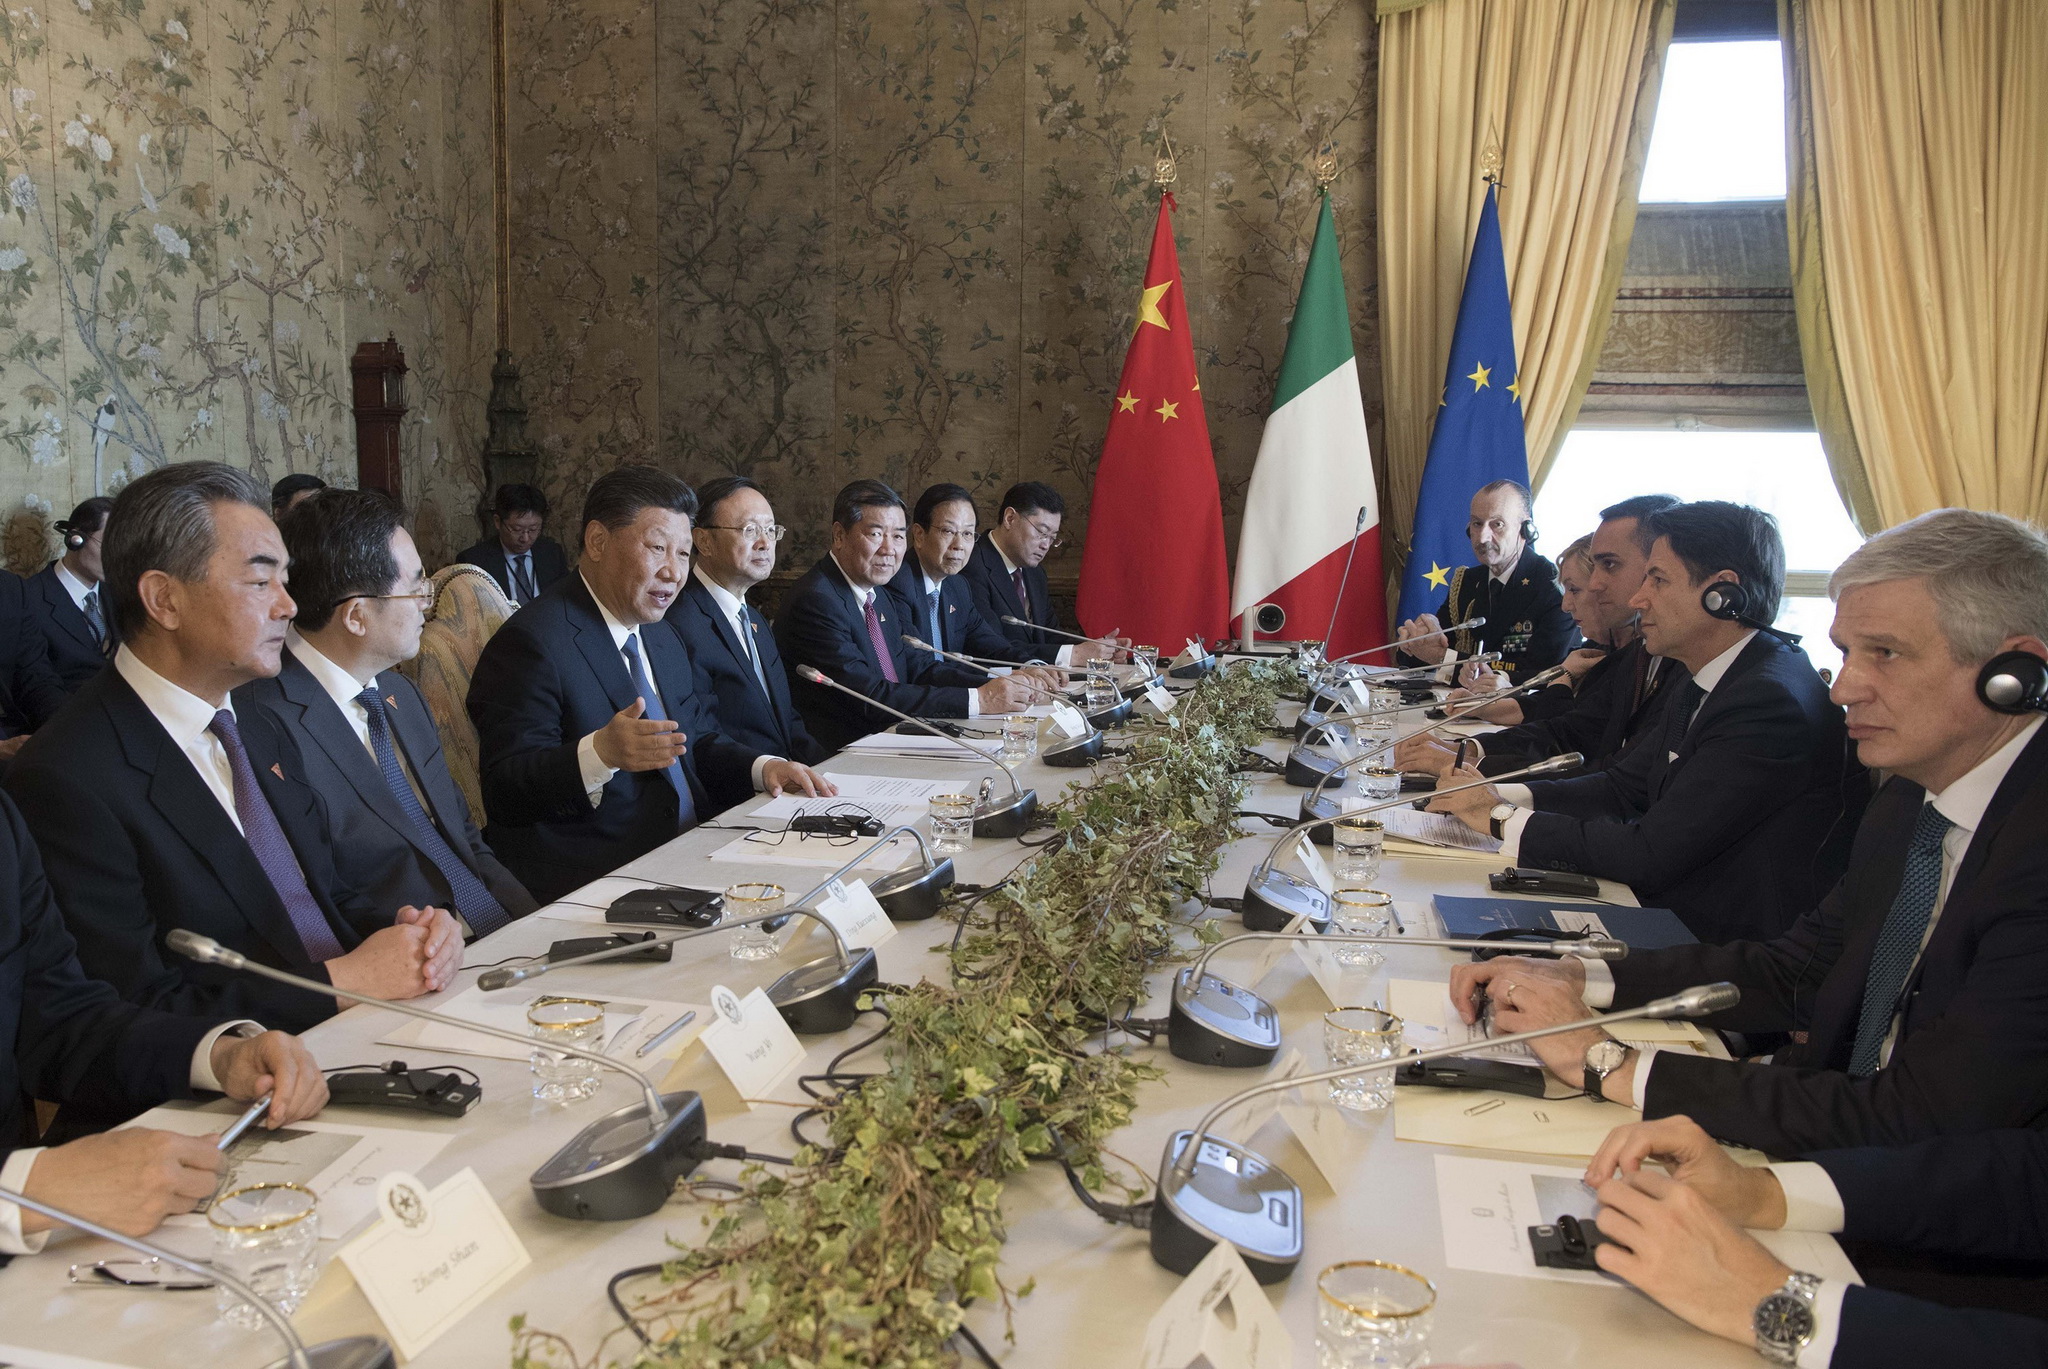 Thủ tướng Italy Giuseppe Conte (thứ 2, phải) và Chủ tịch Trung Quốc Tập Cận Bình (thứ 3, trái) trong cuộc hội đàm tại Rome ngày 23/3/2019. (Ảnh: THX/TTXVN)